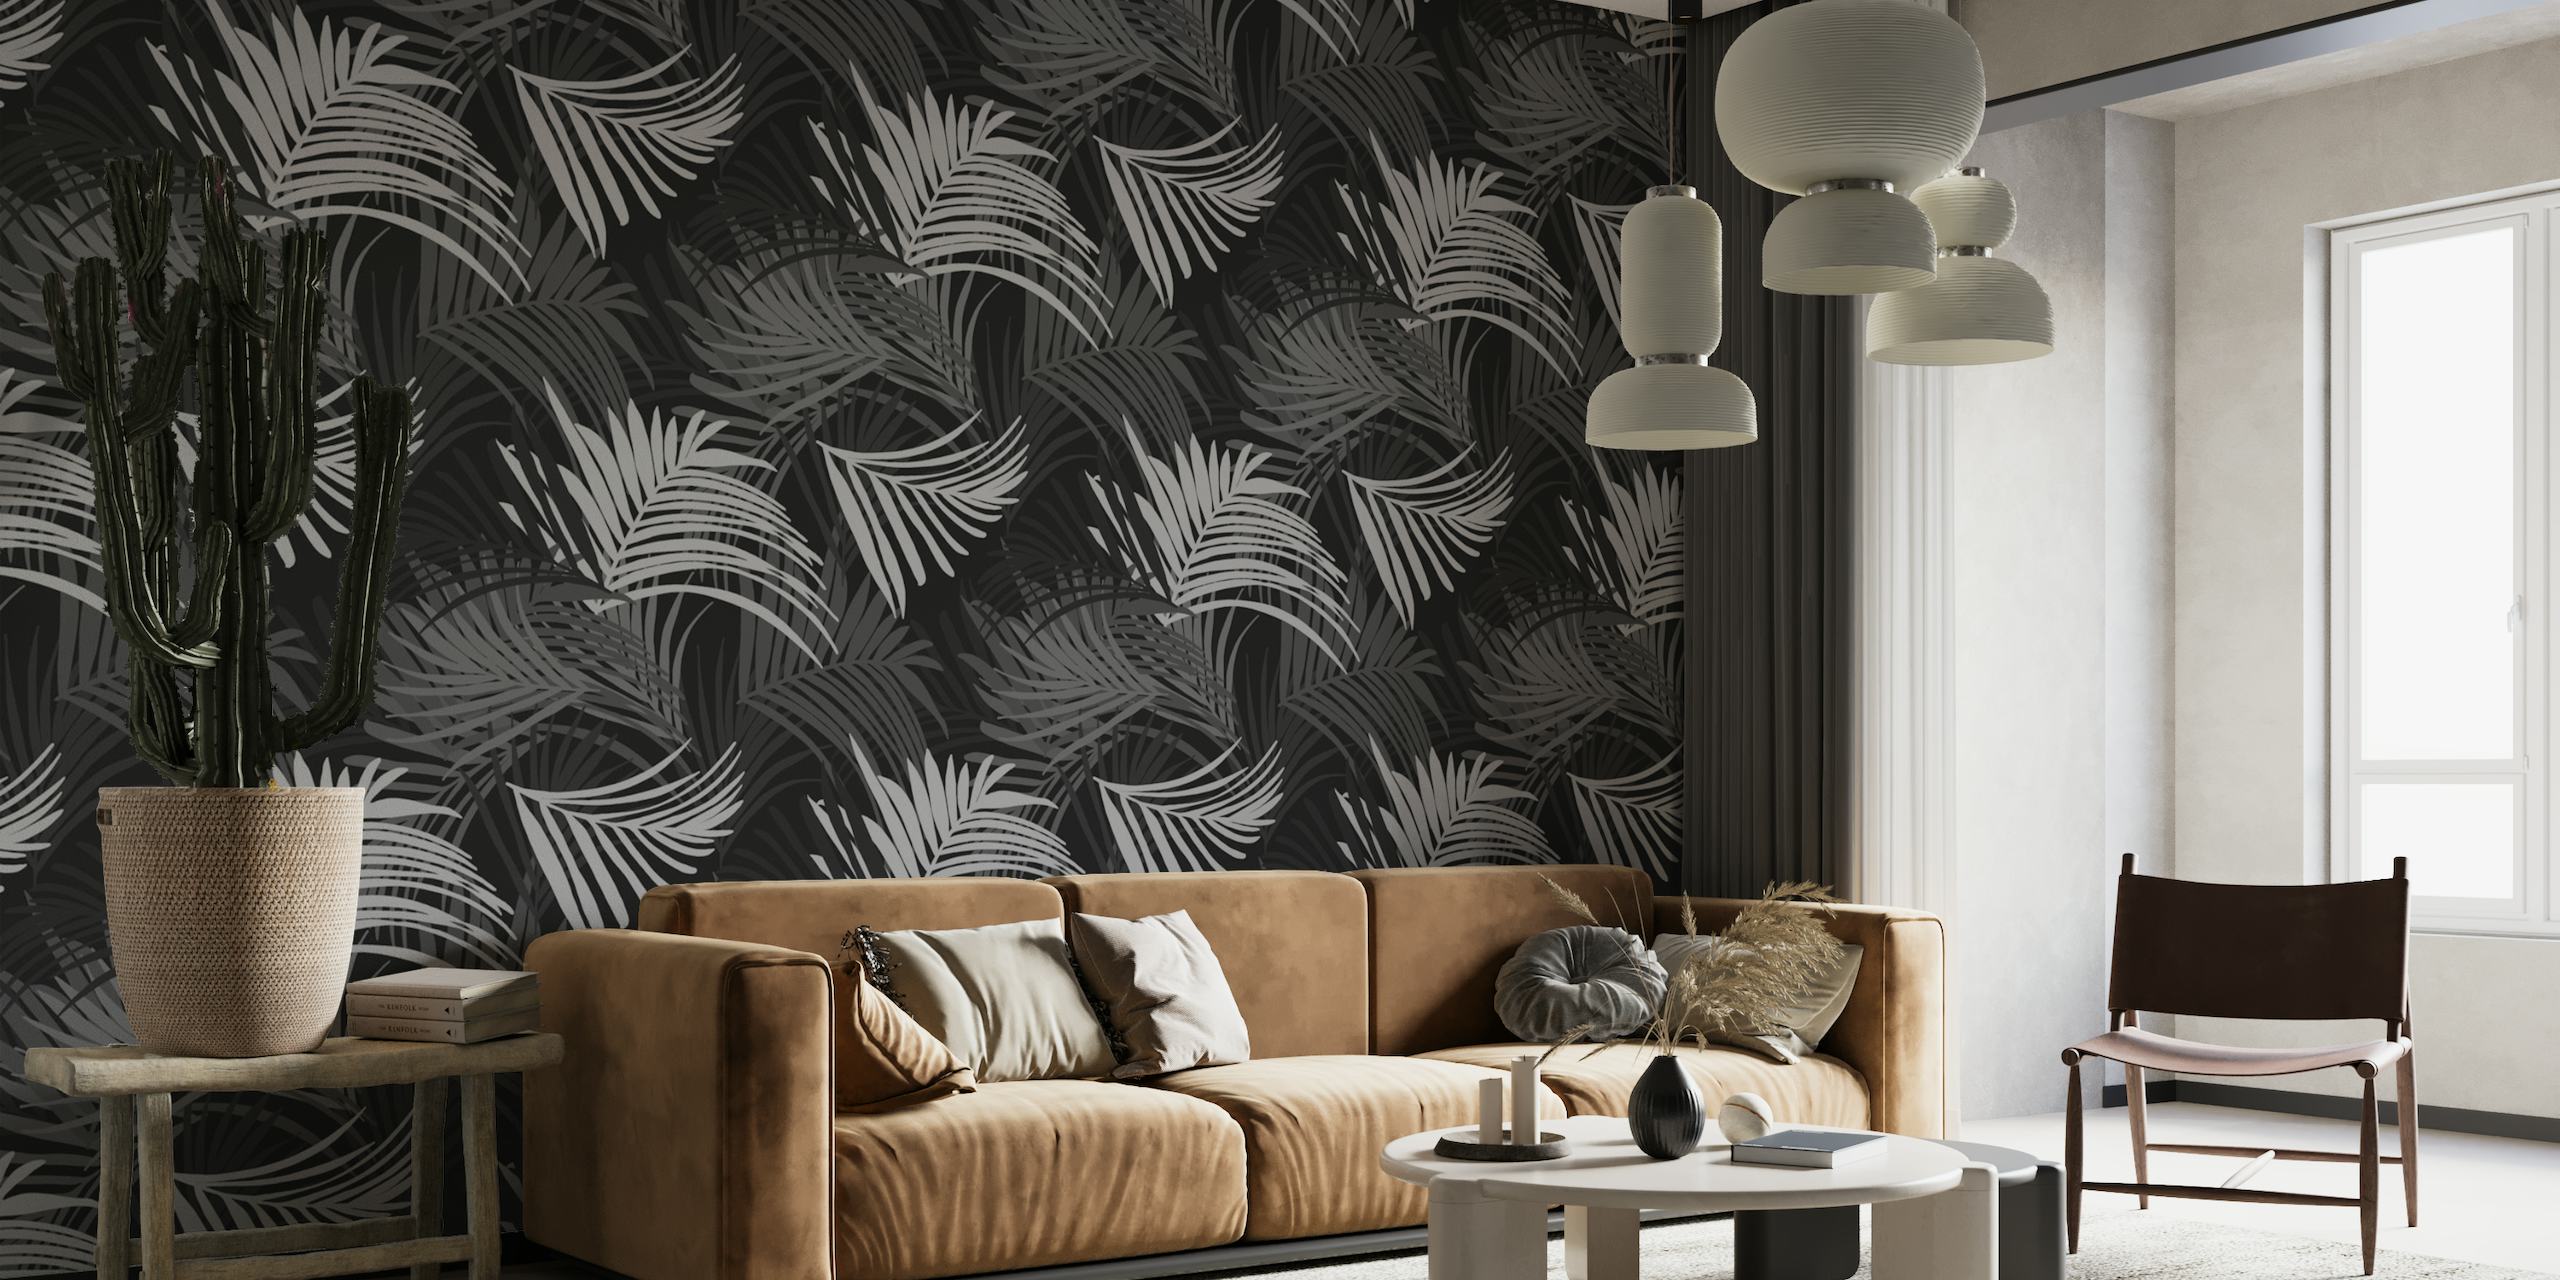 Crno-bijeli zidni mural s uzorkom tropskog palminog lišća, savršen za stvaranje teme spokojne džungle.